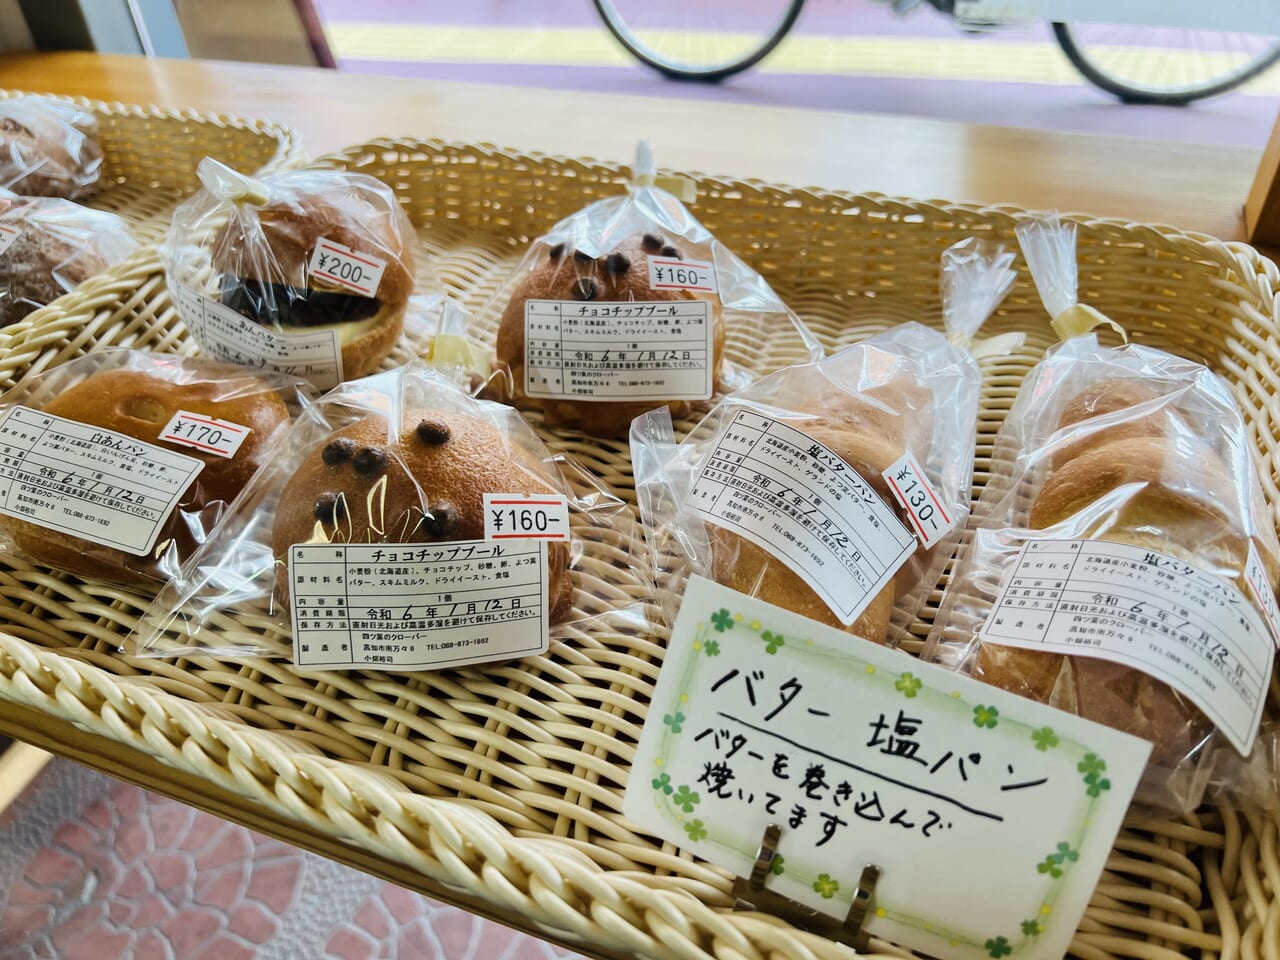 閉店セール中の「小畑陶器店」に併設されたパン屋「四ツ葉のクローバー」のパン